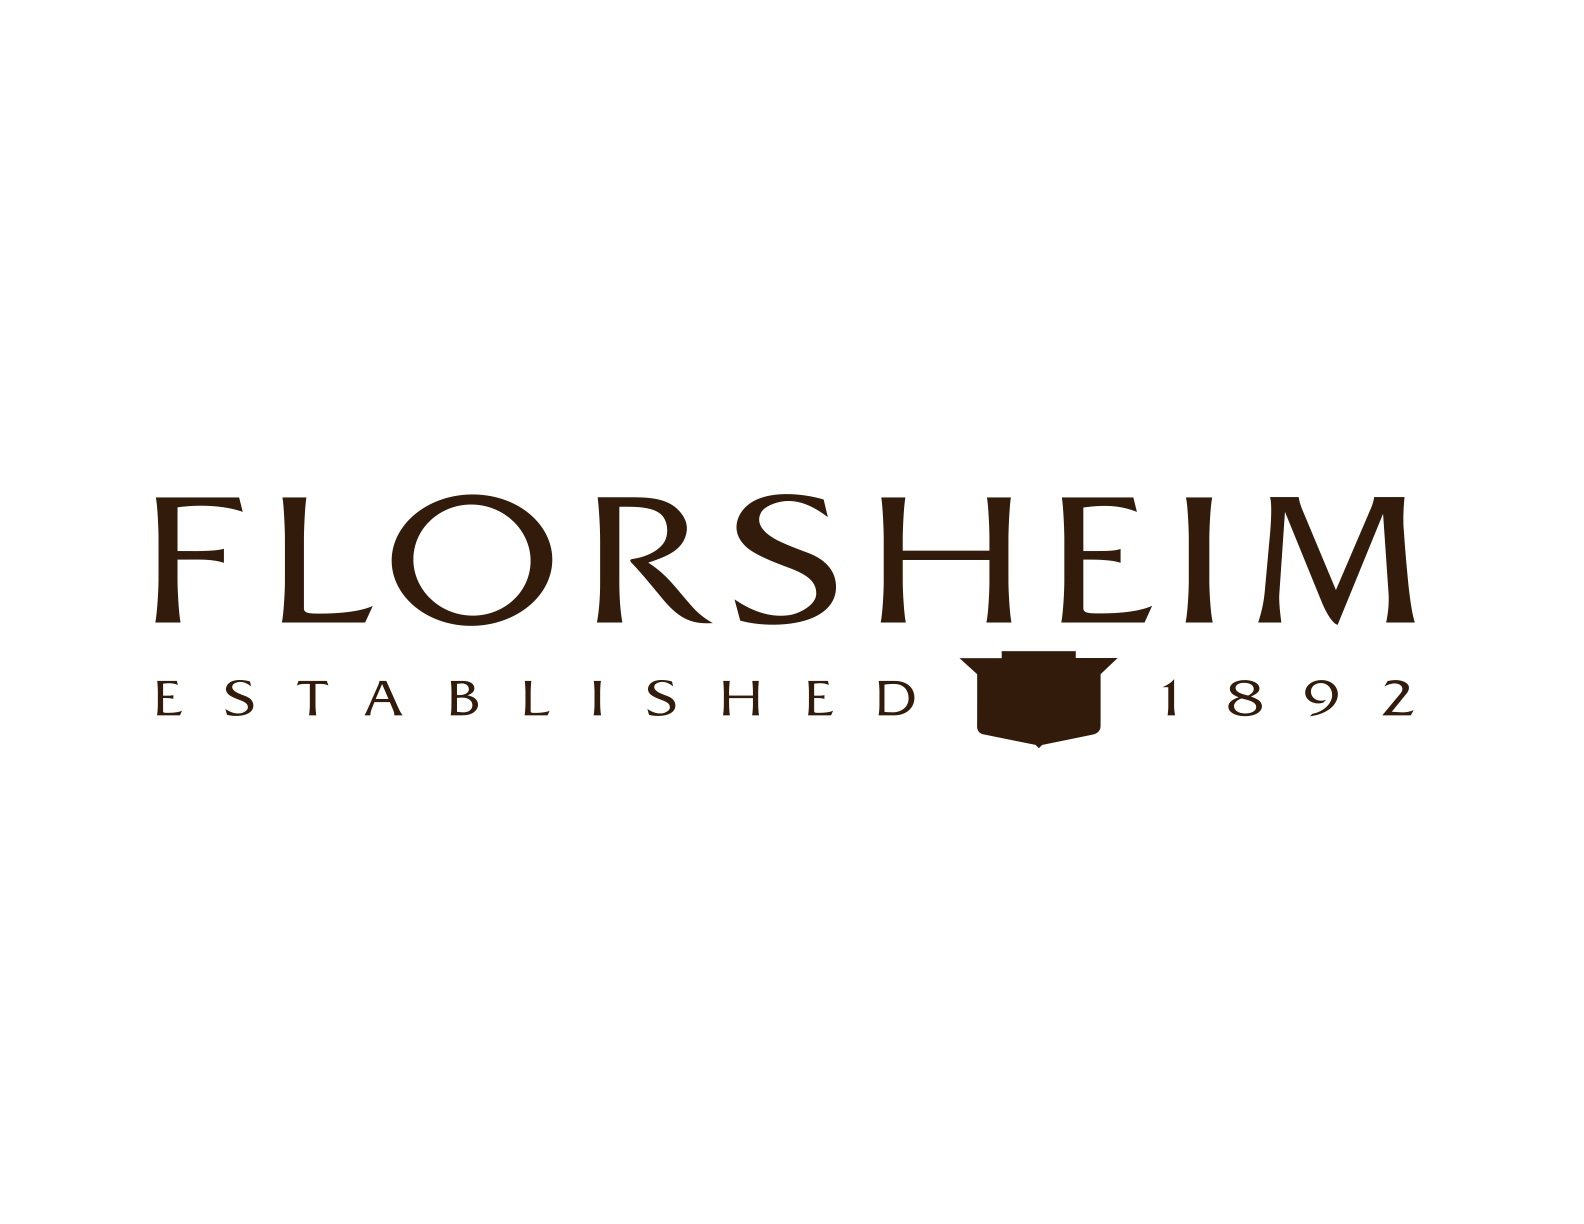 logo Florsheim